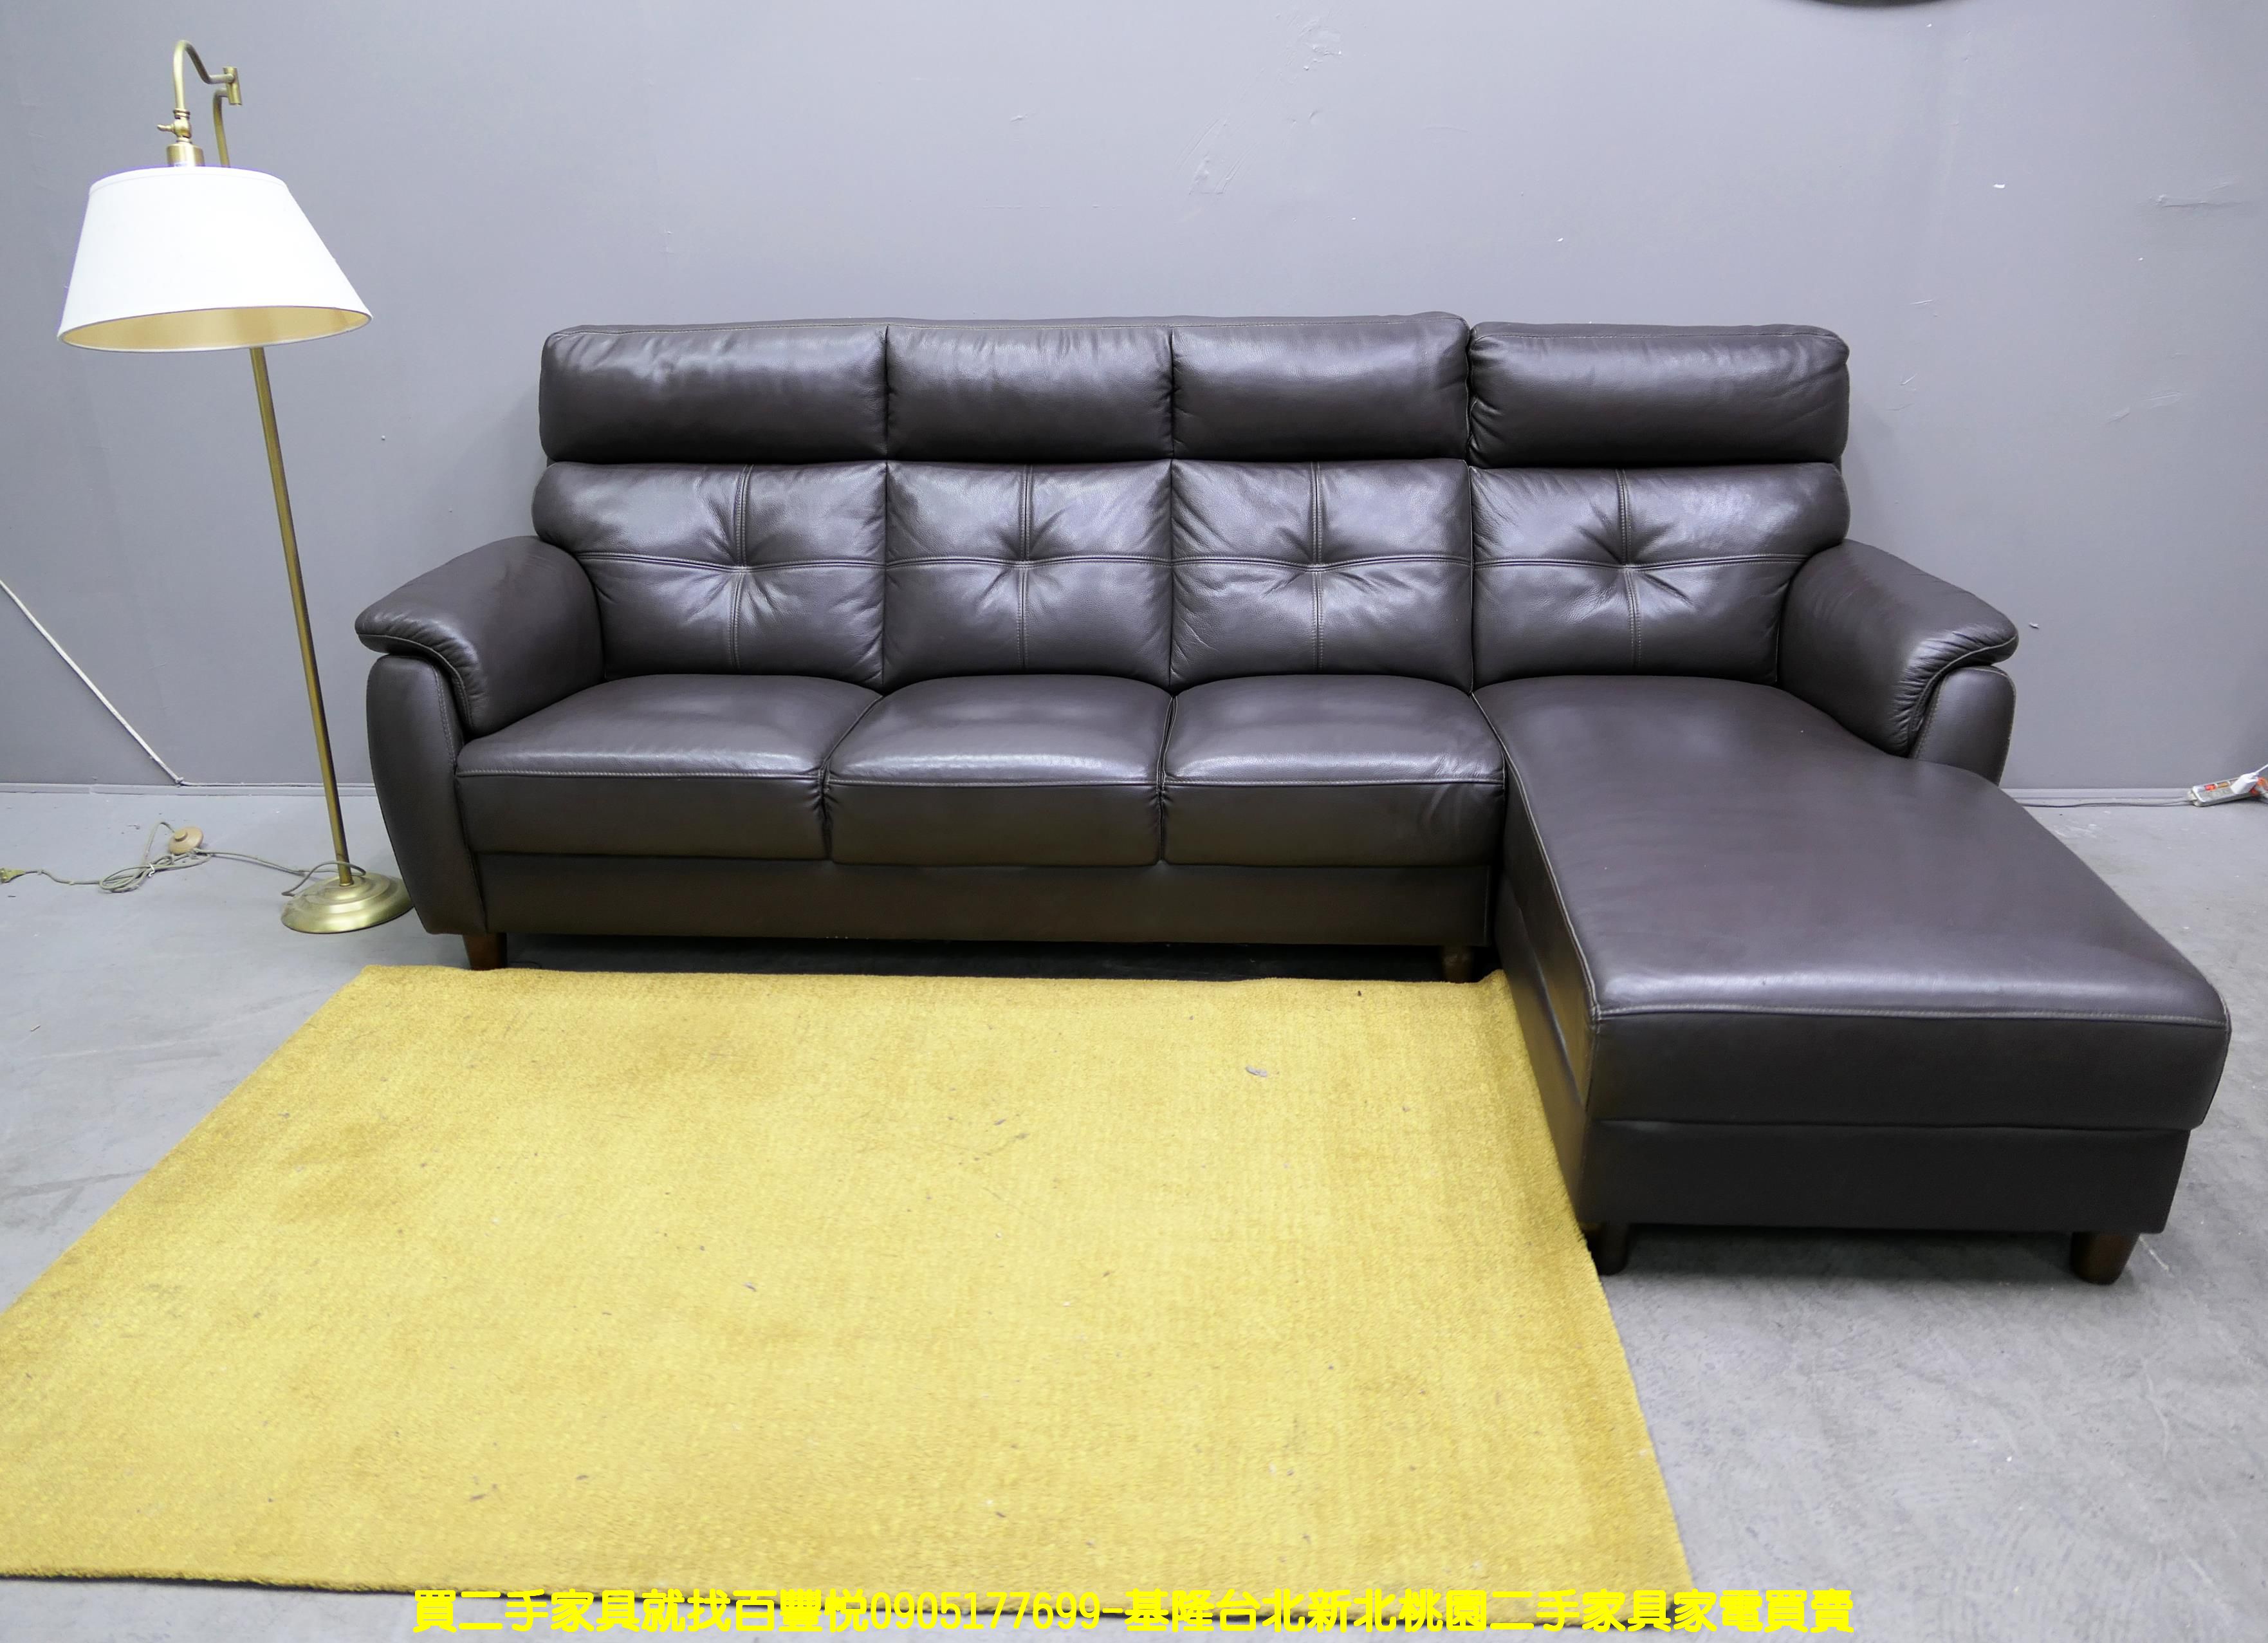 二手沙發 咖啡色 270公分 沙發組 半牛皮沙發 L型沙發 會客沙發 1